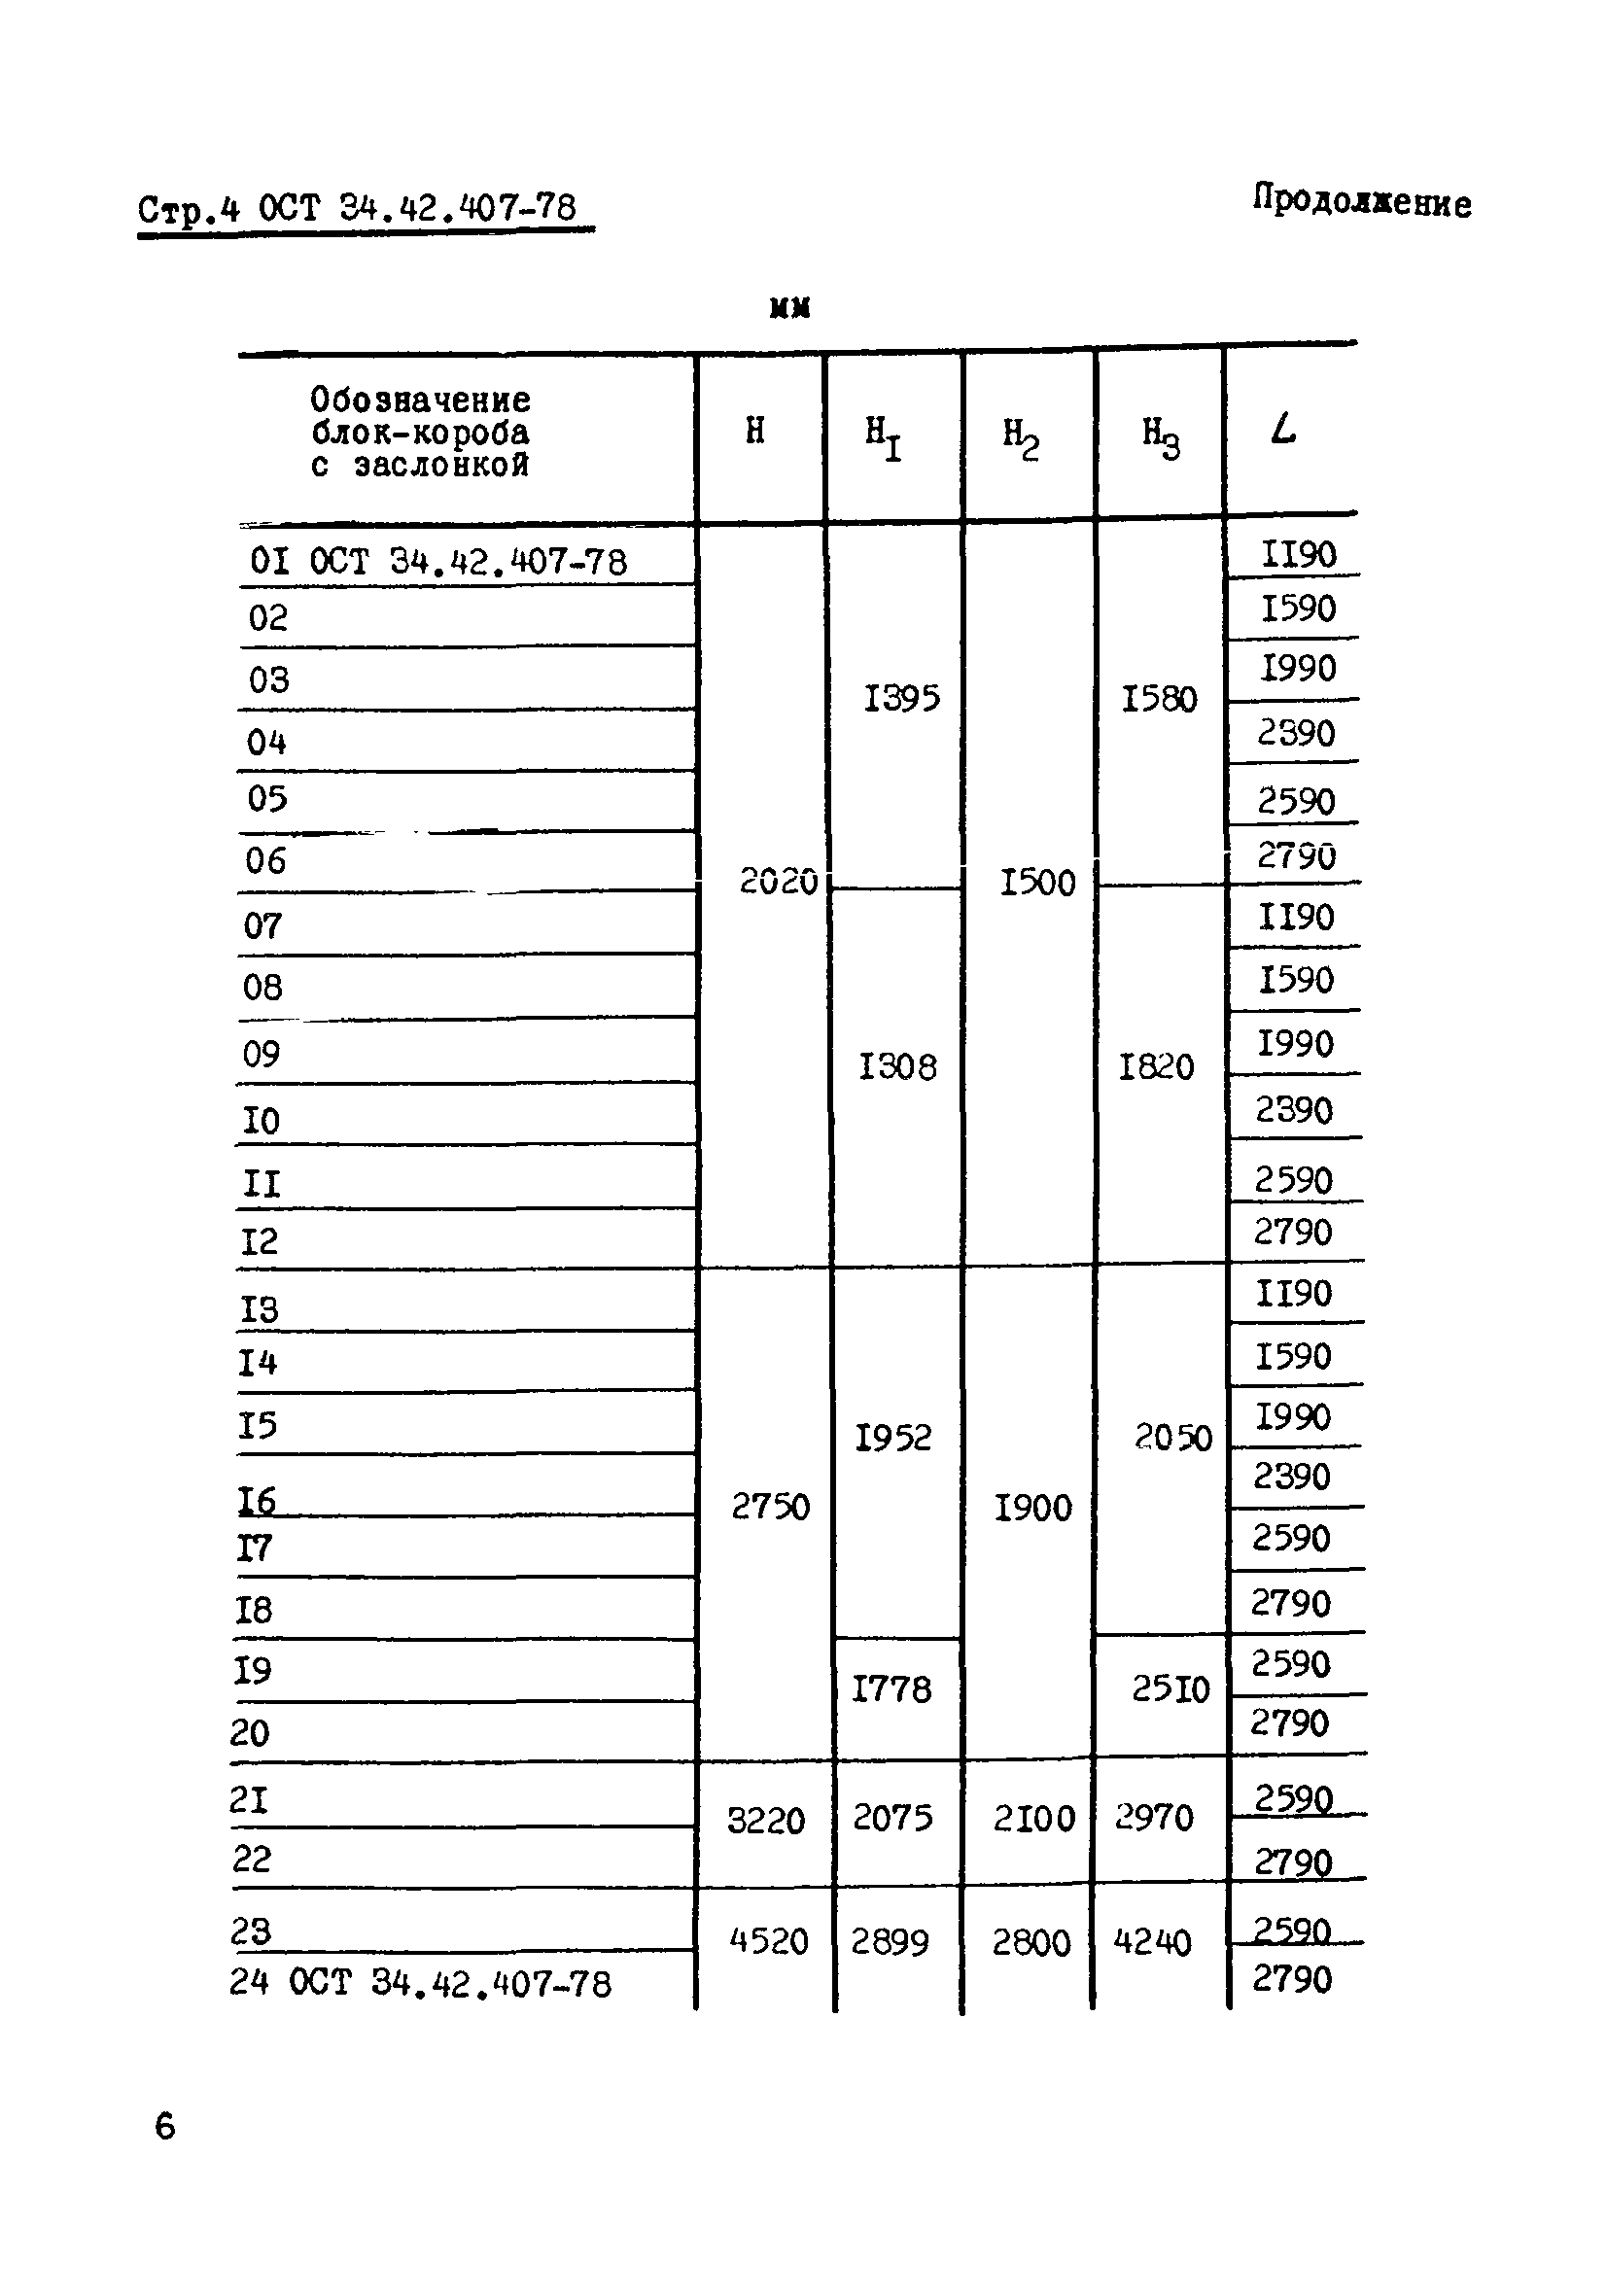 ОСТ 34-42-407-78